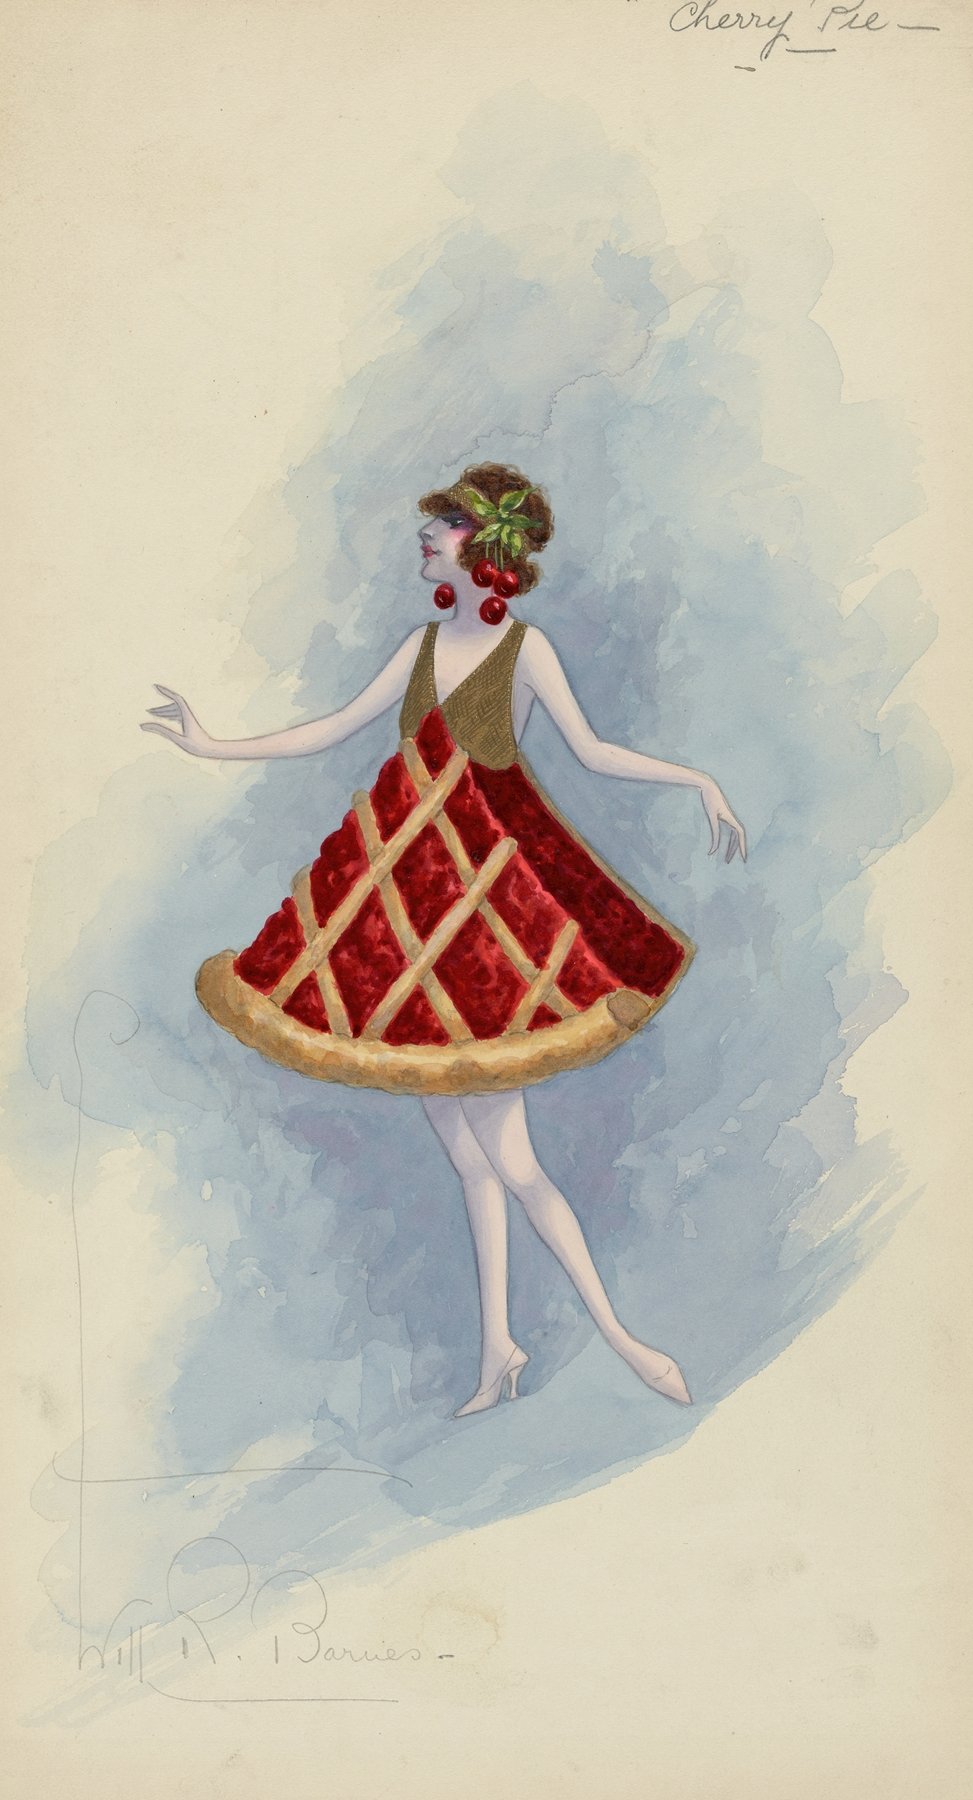 Cherry Pie (1923 - 1924)